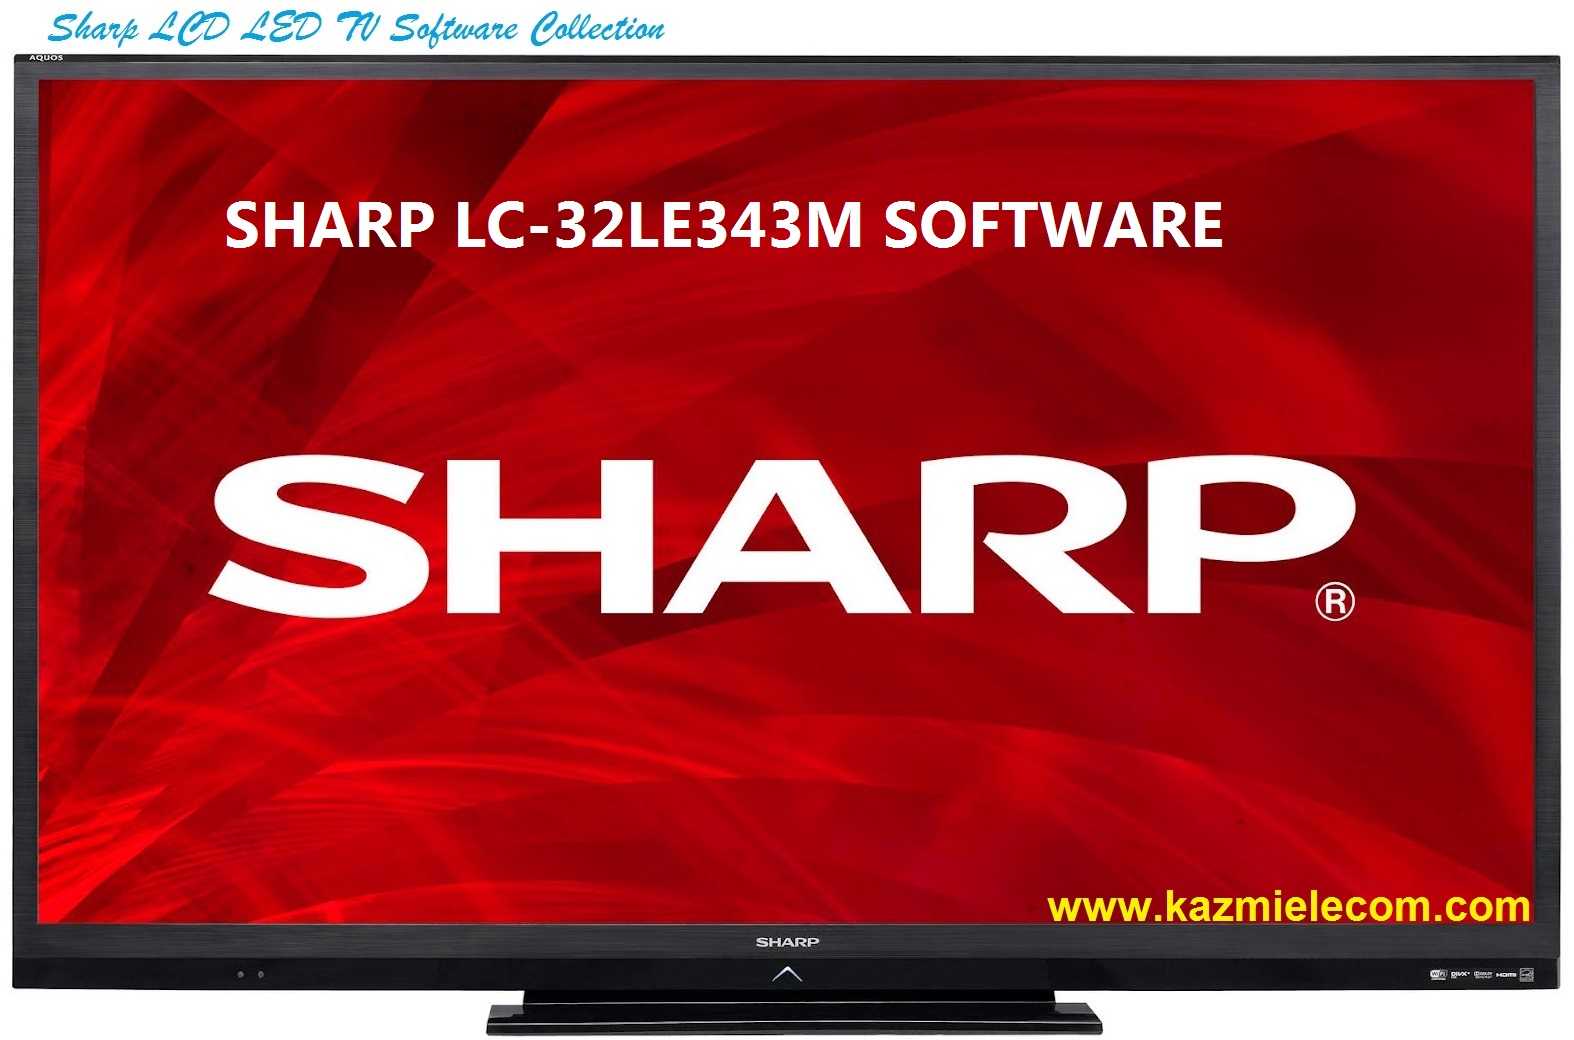 Sharp Lc-32Le343M